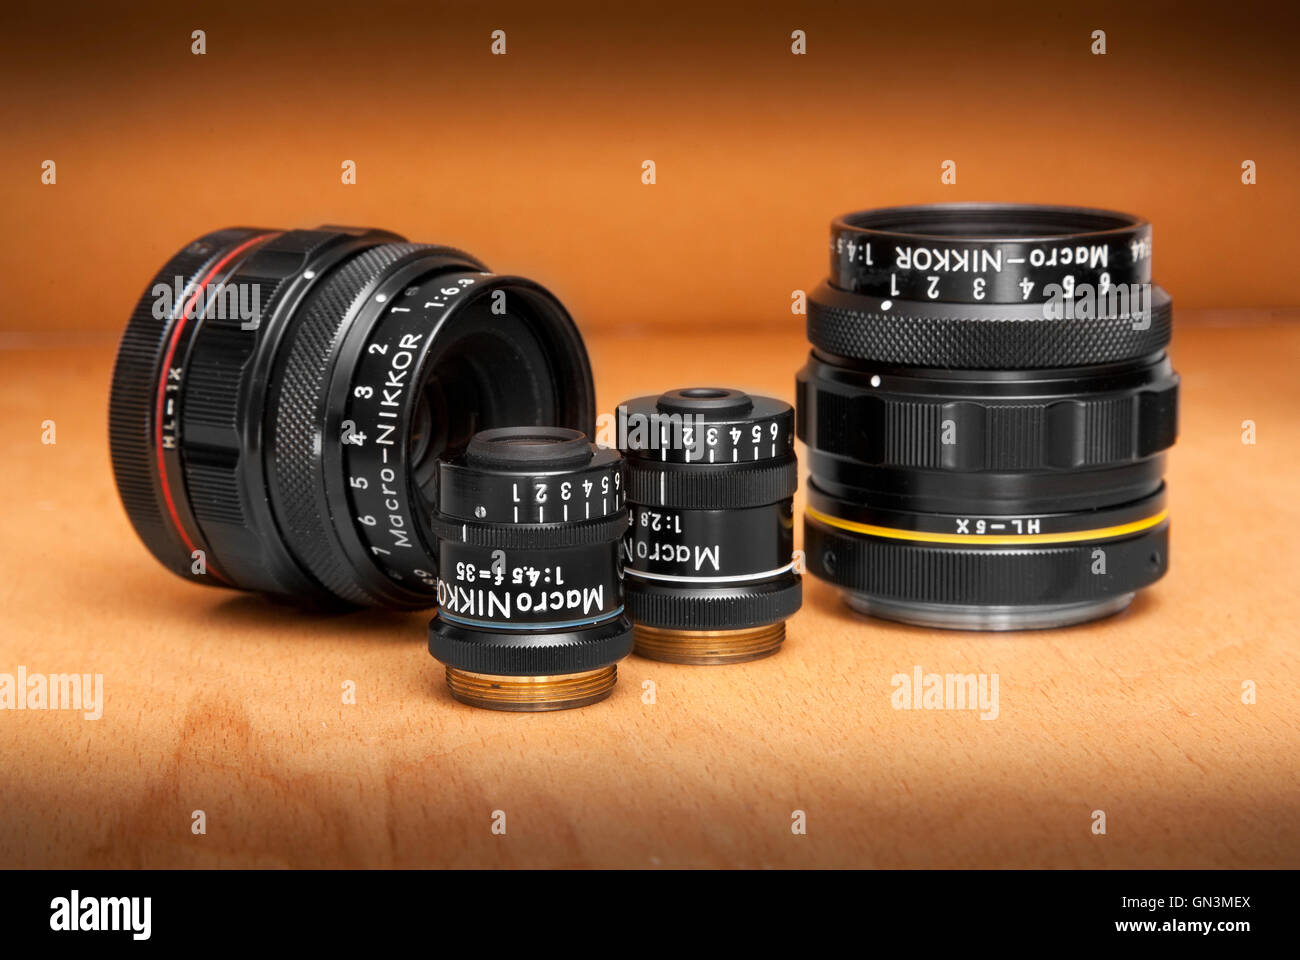 Nikon Multiphot Makro objetivos Nikkor de alta calidad especializada, lentes macro, parte del sistema Multiphot científico Foto de stock